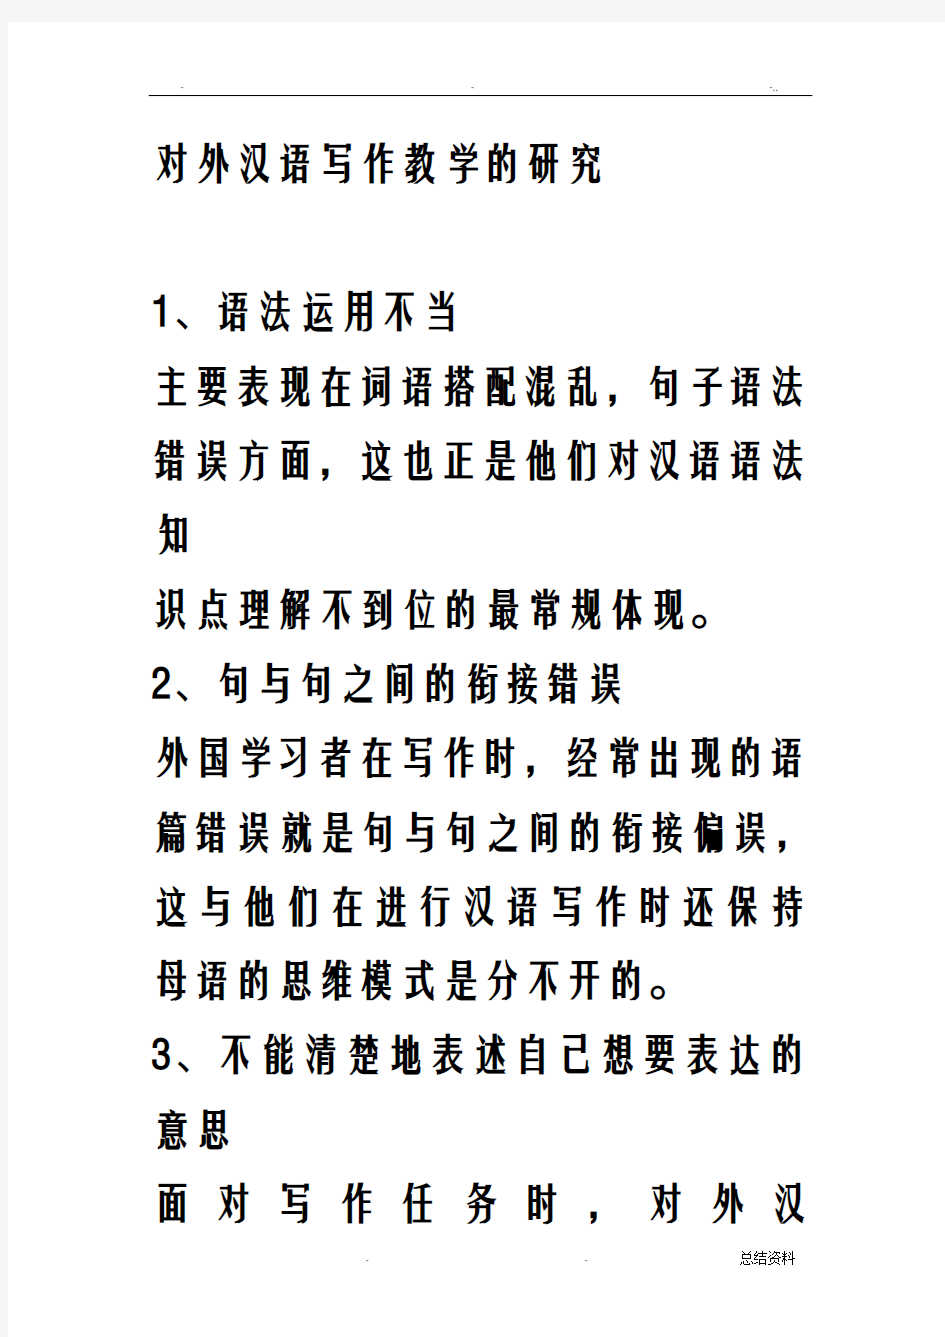 对外汉语写作教学的研究报告